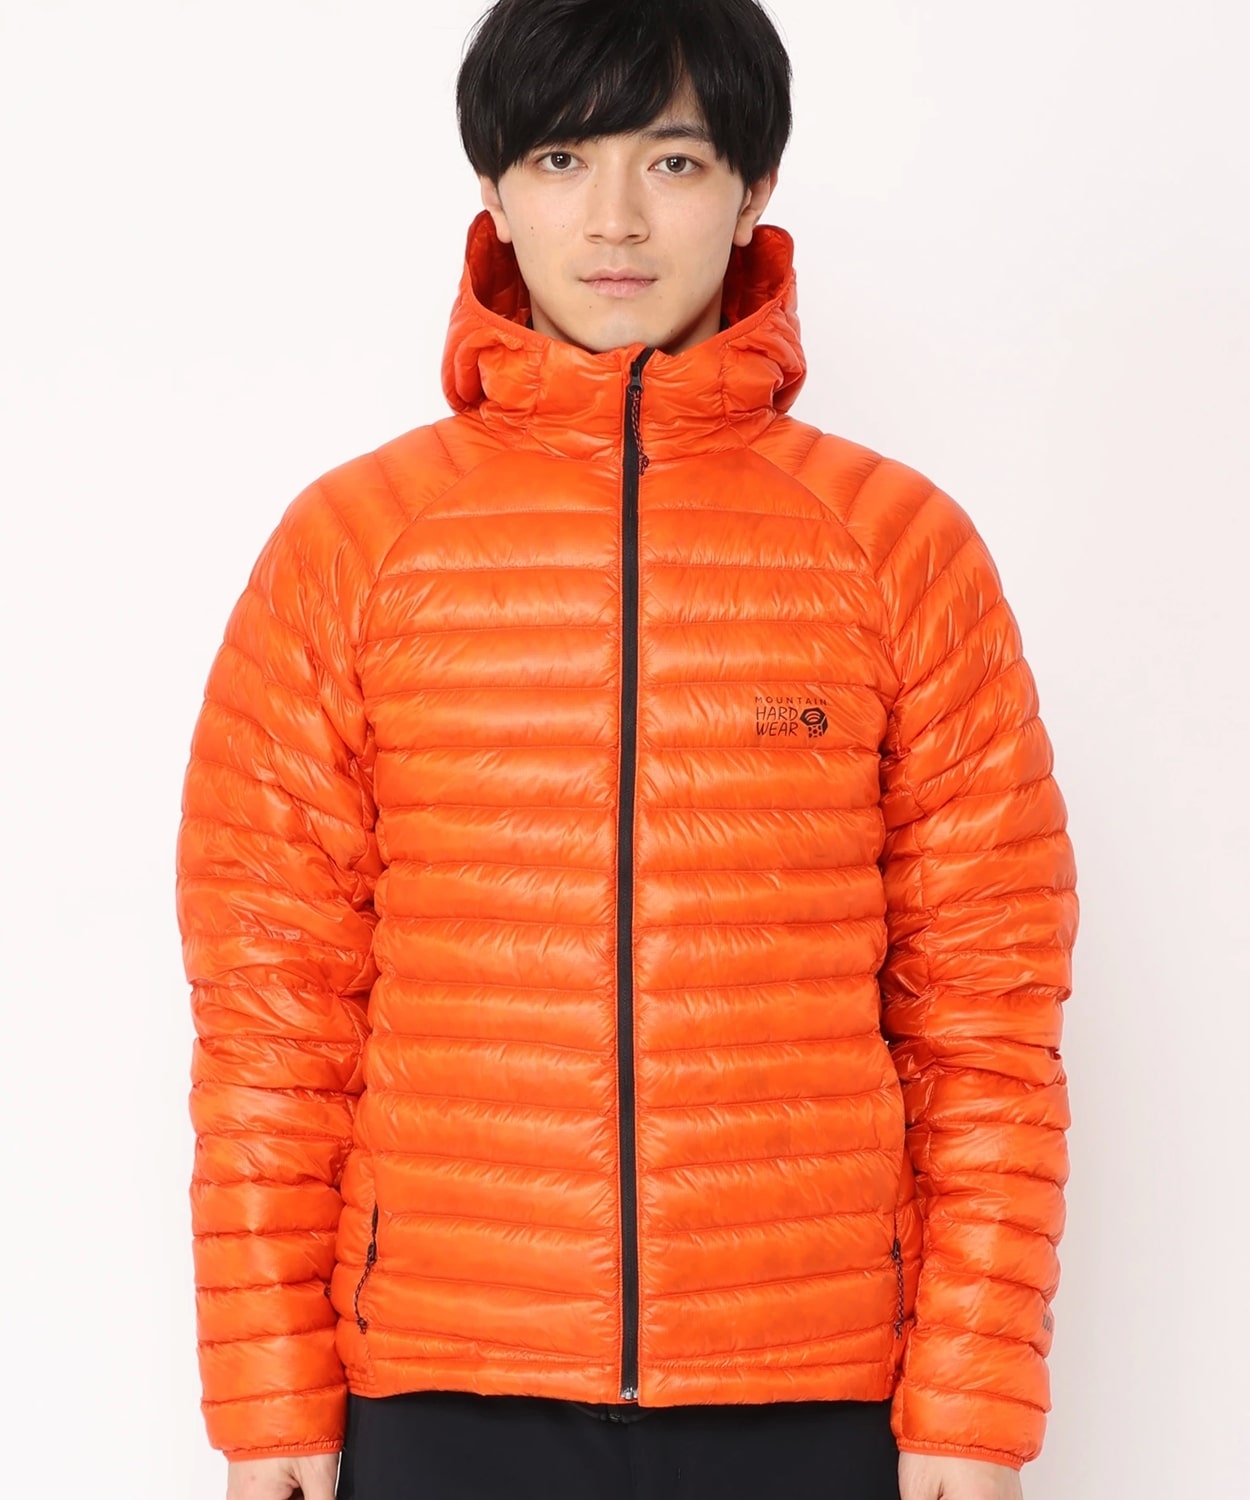 NoName jacket Orange 18-24M KIDS FASHION Jackets NO STYLE discount 77% 